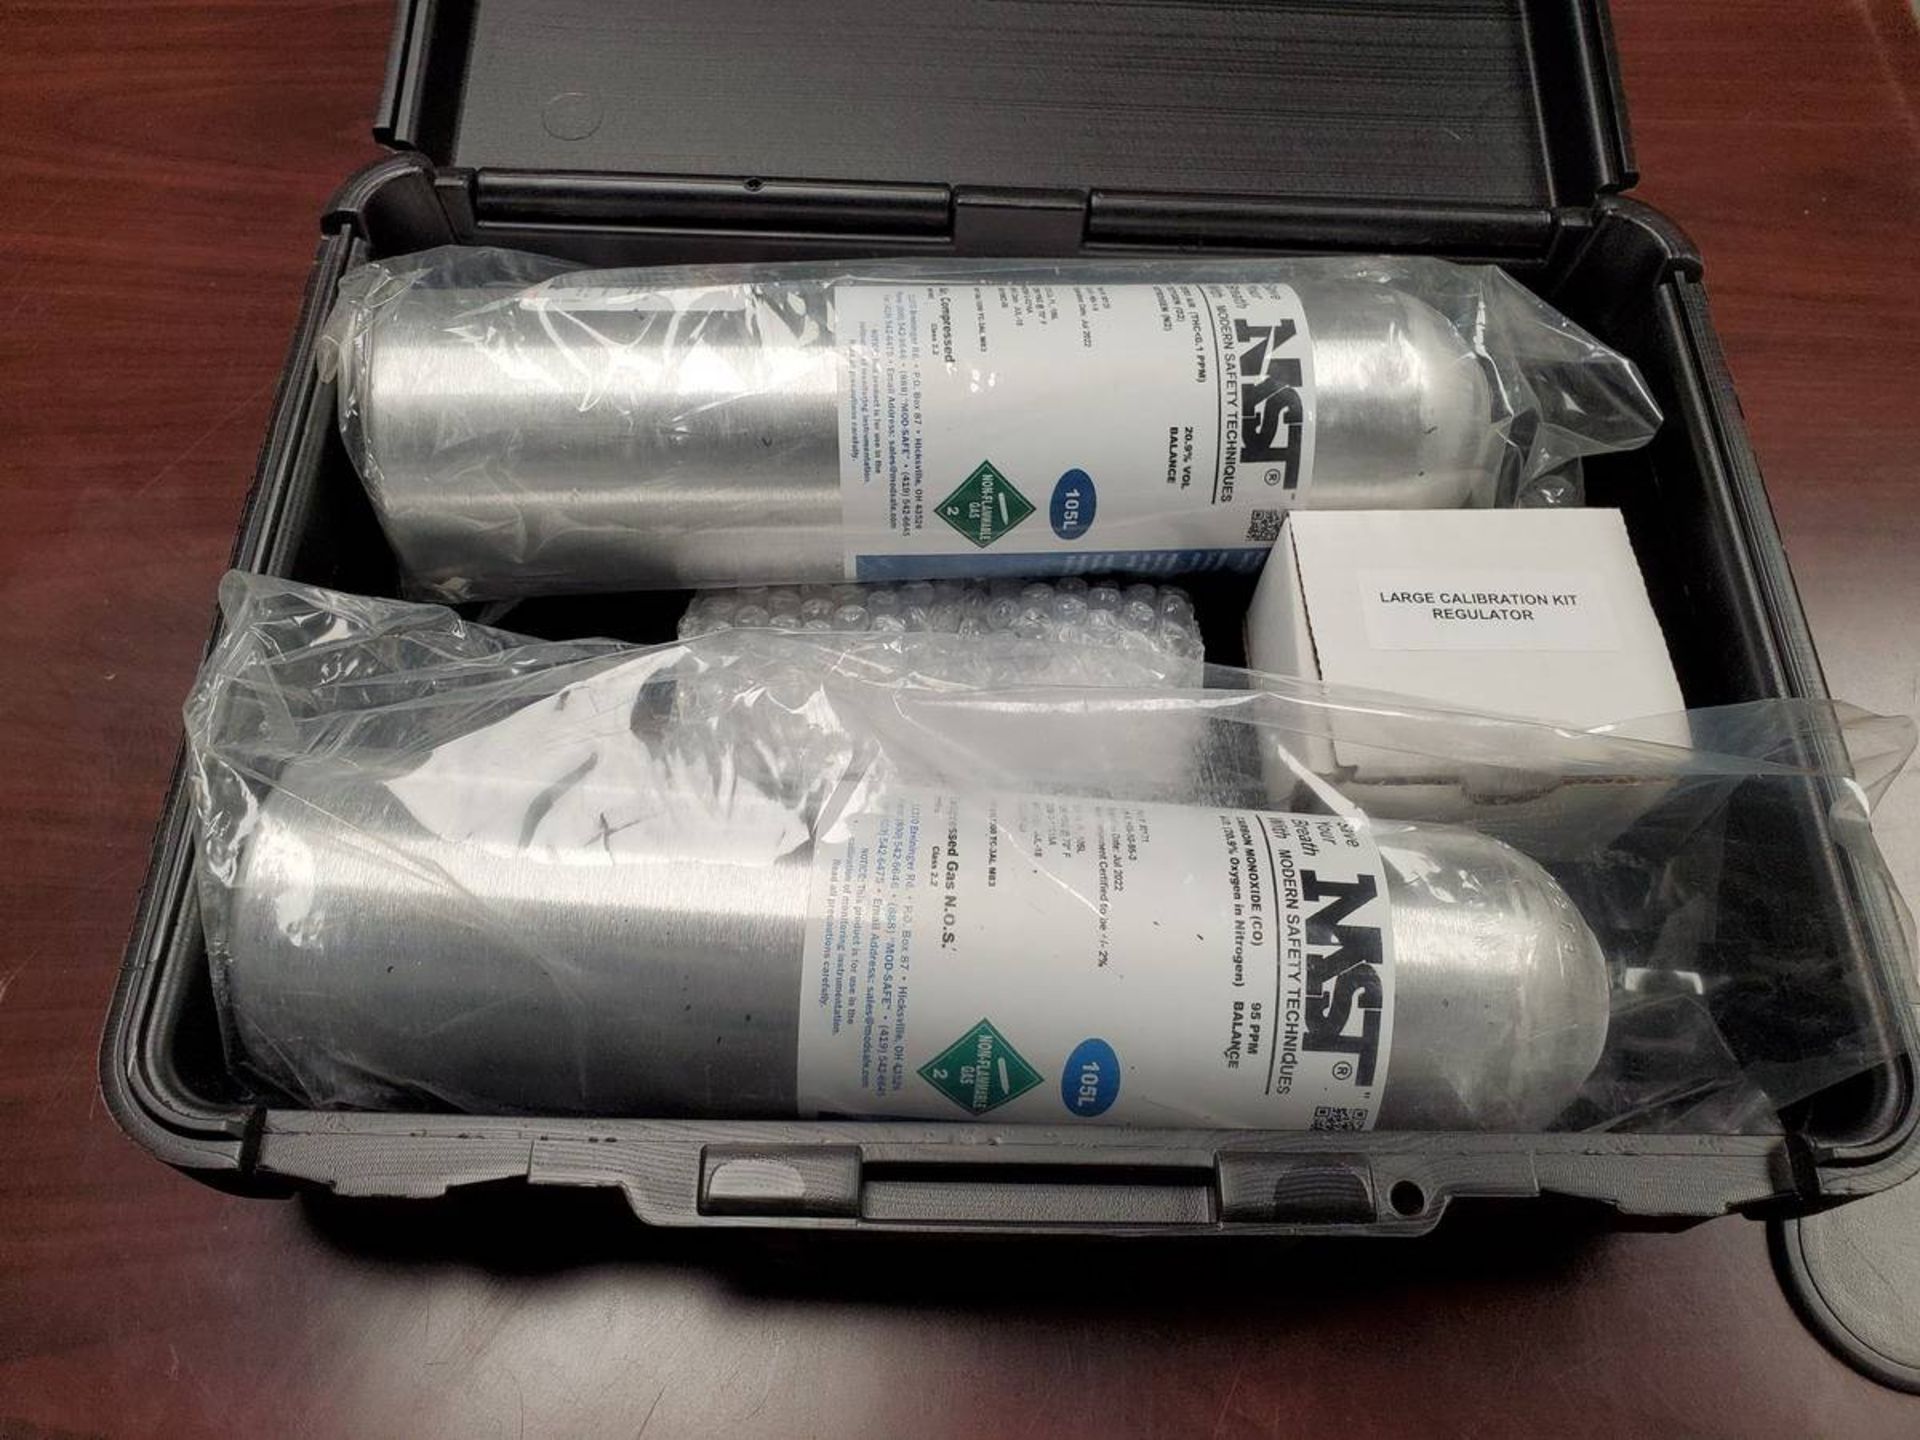 NST Compressed Air Bottles W/ Calibration Regulator Kit - Image 2 of 2